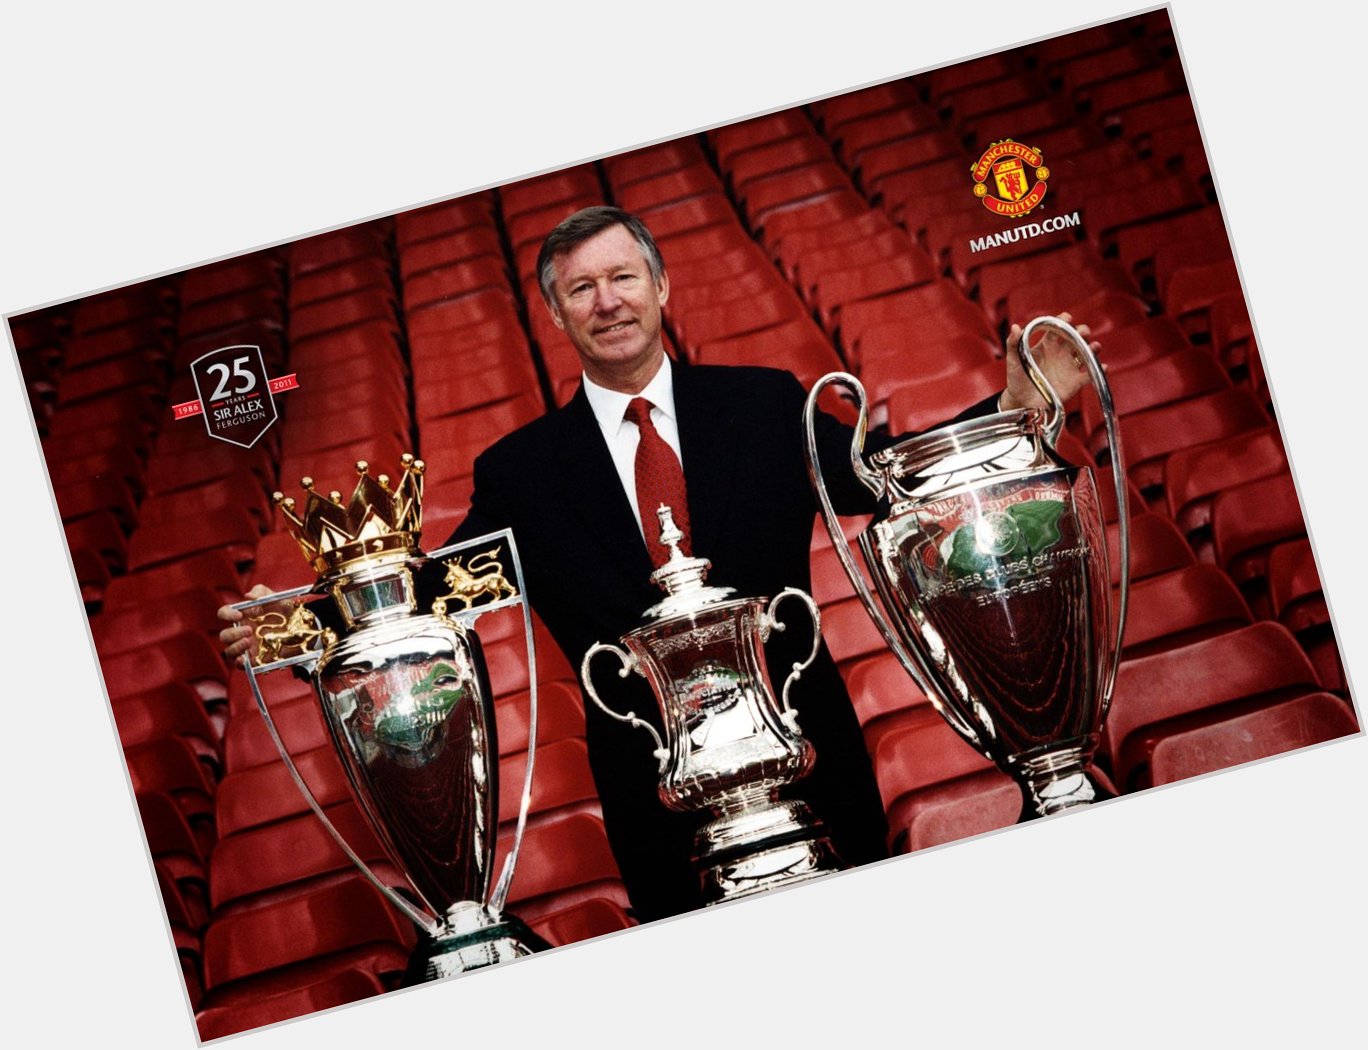 13 Premier Leagues
2 Champions League
1 C World cup
5 FA Cup
4 League cup
1 Legend

Happy Birthday Sir Alex Ferguson 